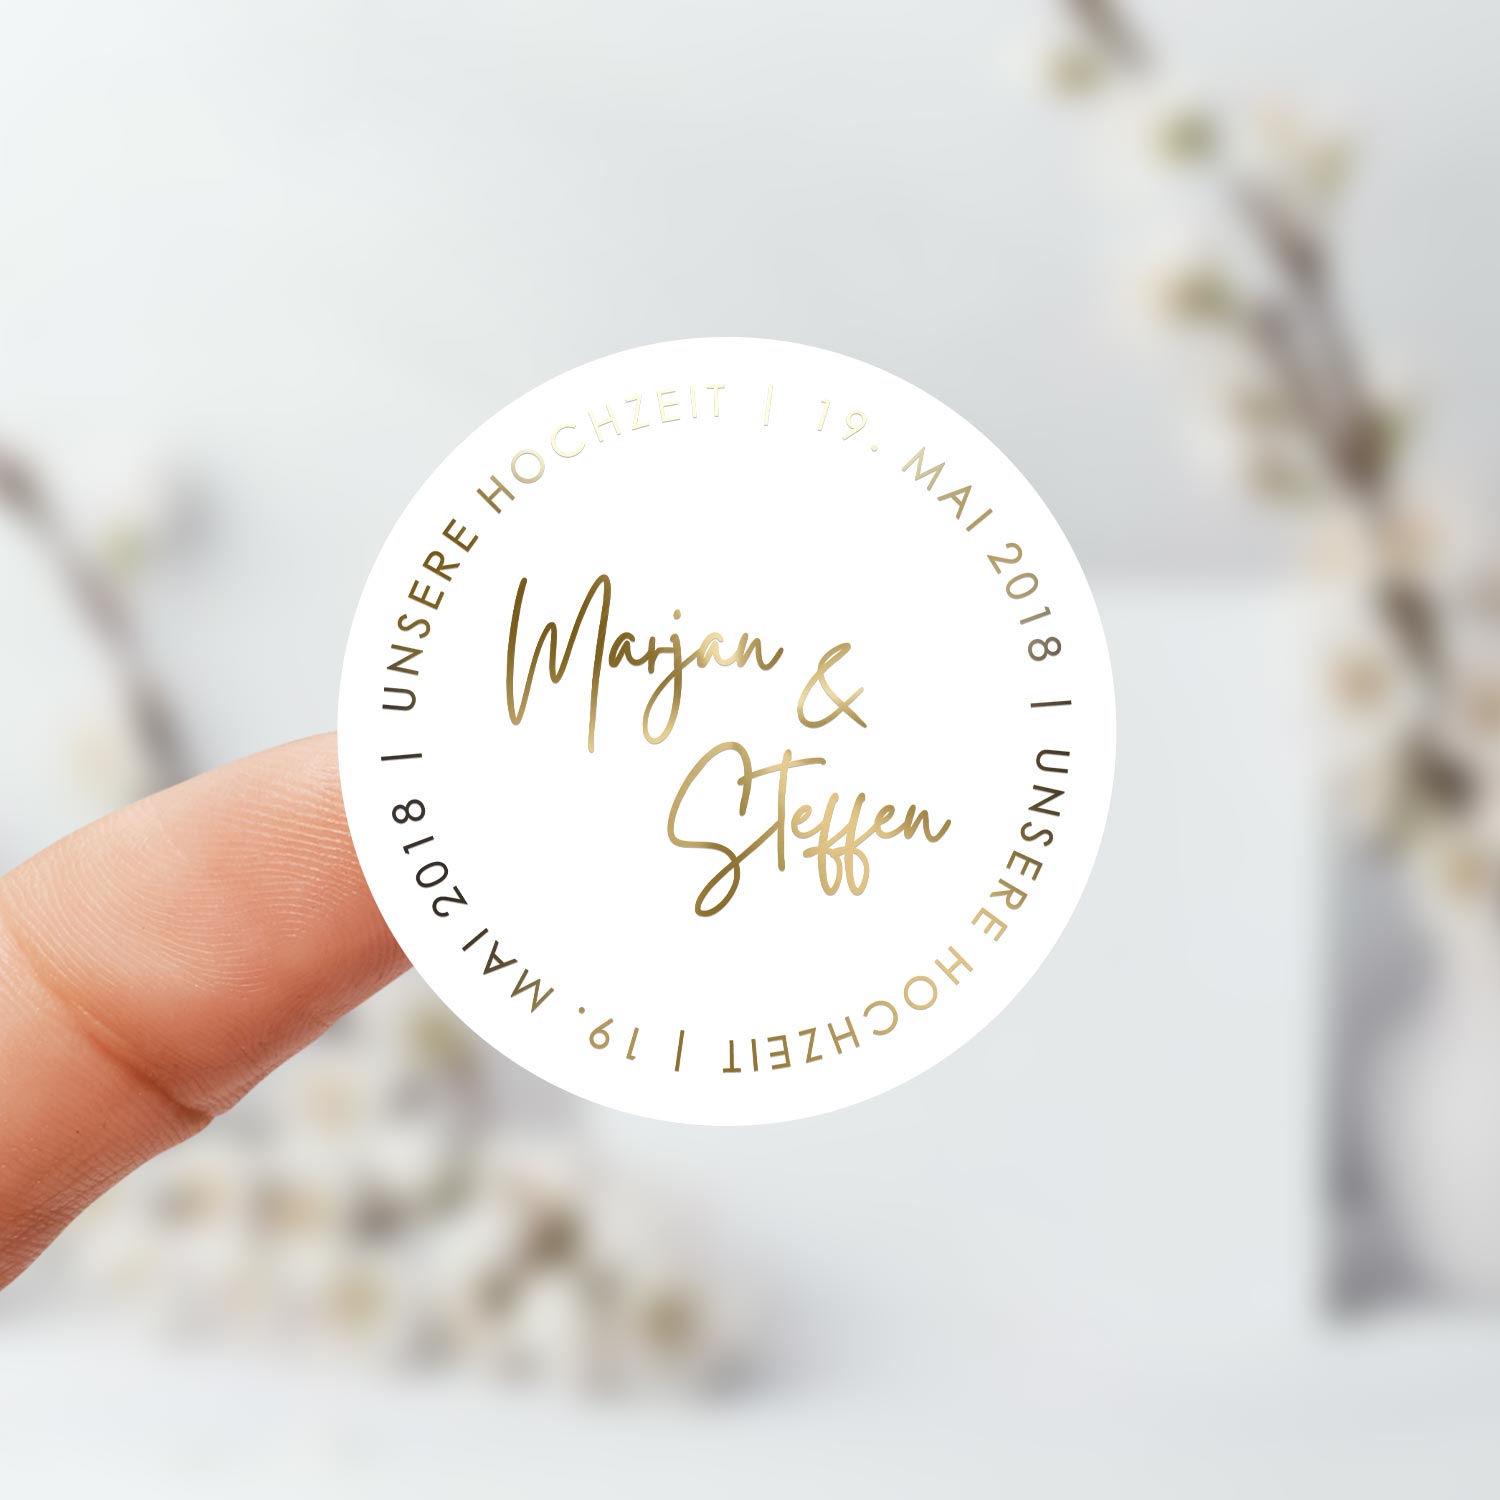 Personalisierte Aufkleber / Sticker zur Hochzeit für Gastgeschenke, Deko,  Briefumschläge, etc. - Beautiful in White - Weddingshop